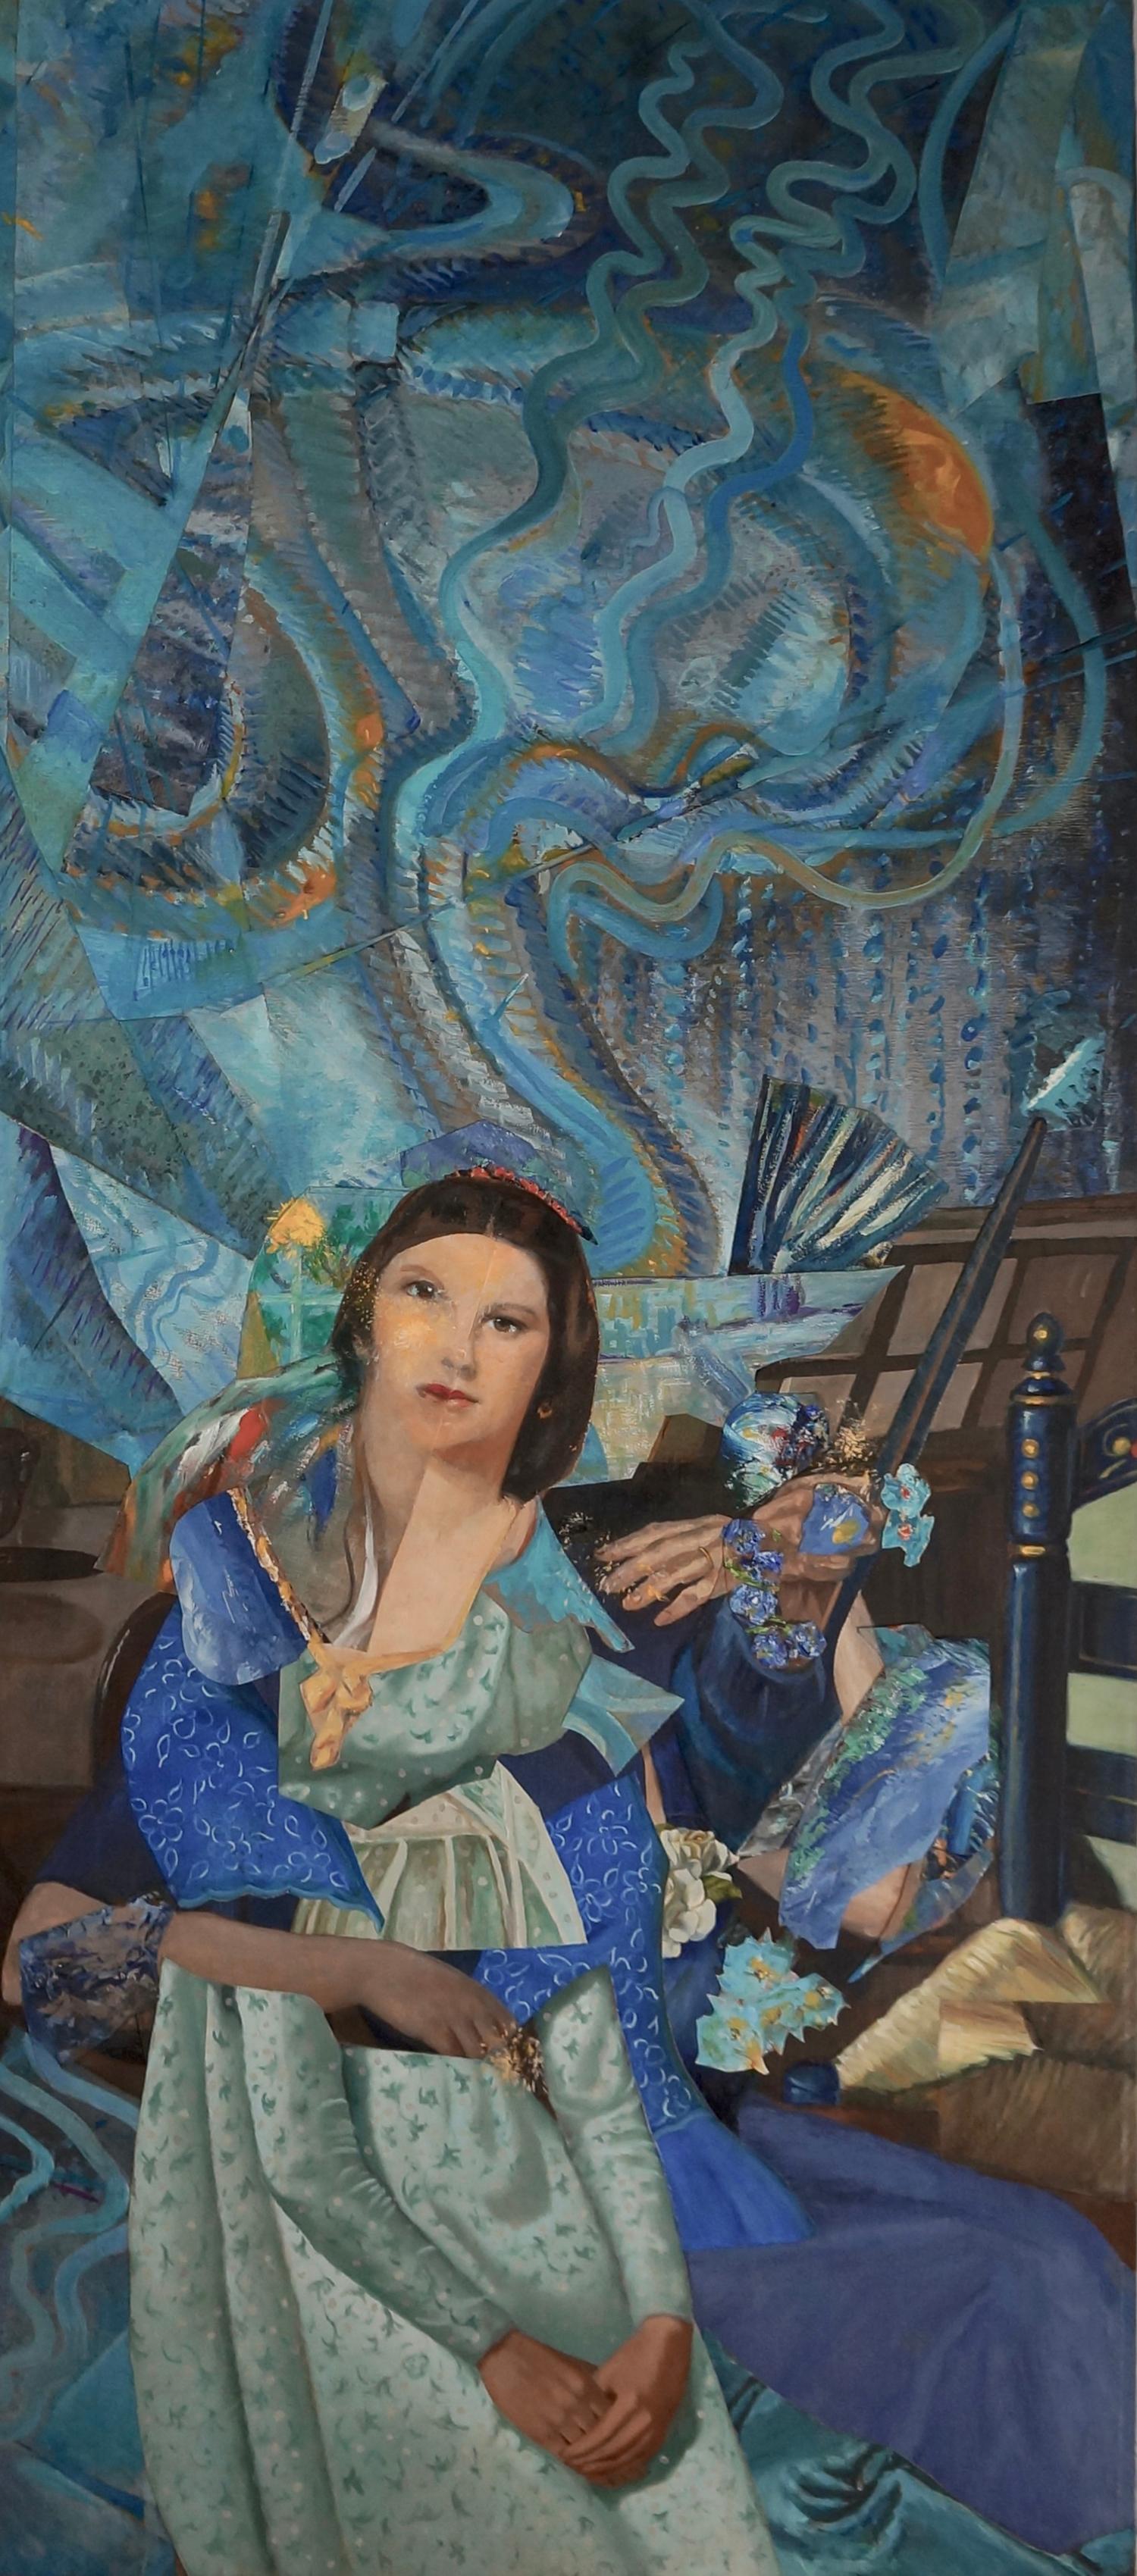 "Imaginary Portrait of Wanda Landowska", acrylic, collage, blues, mixed media - Mixed Media Art by John Baker